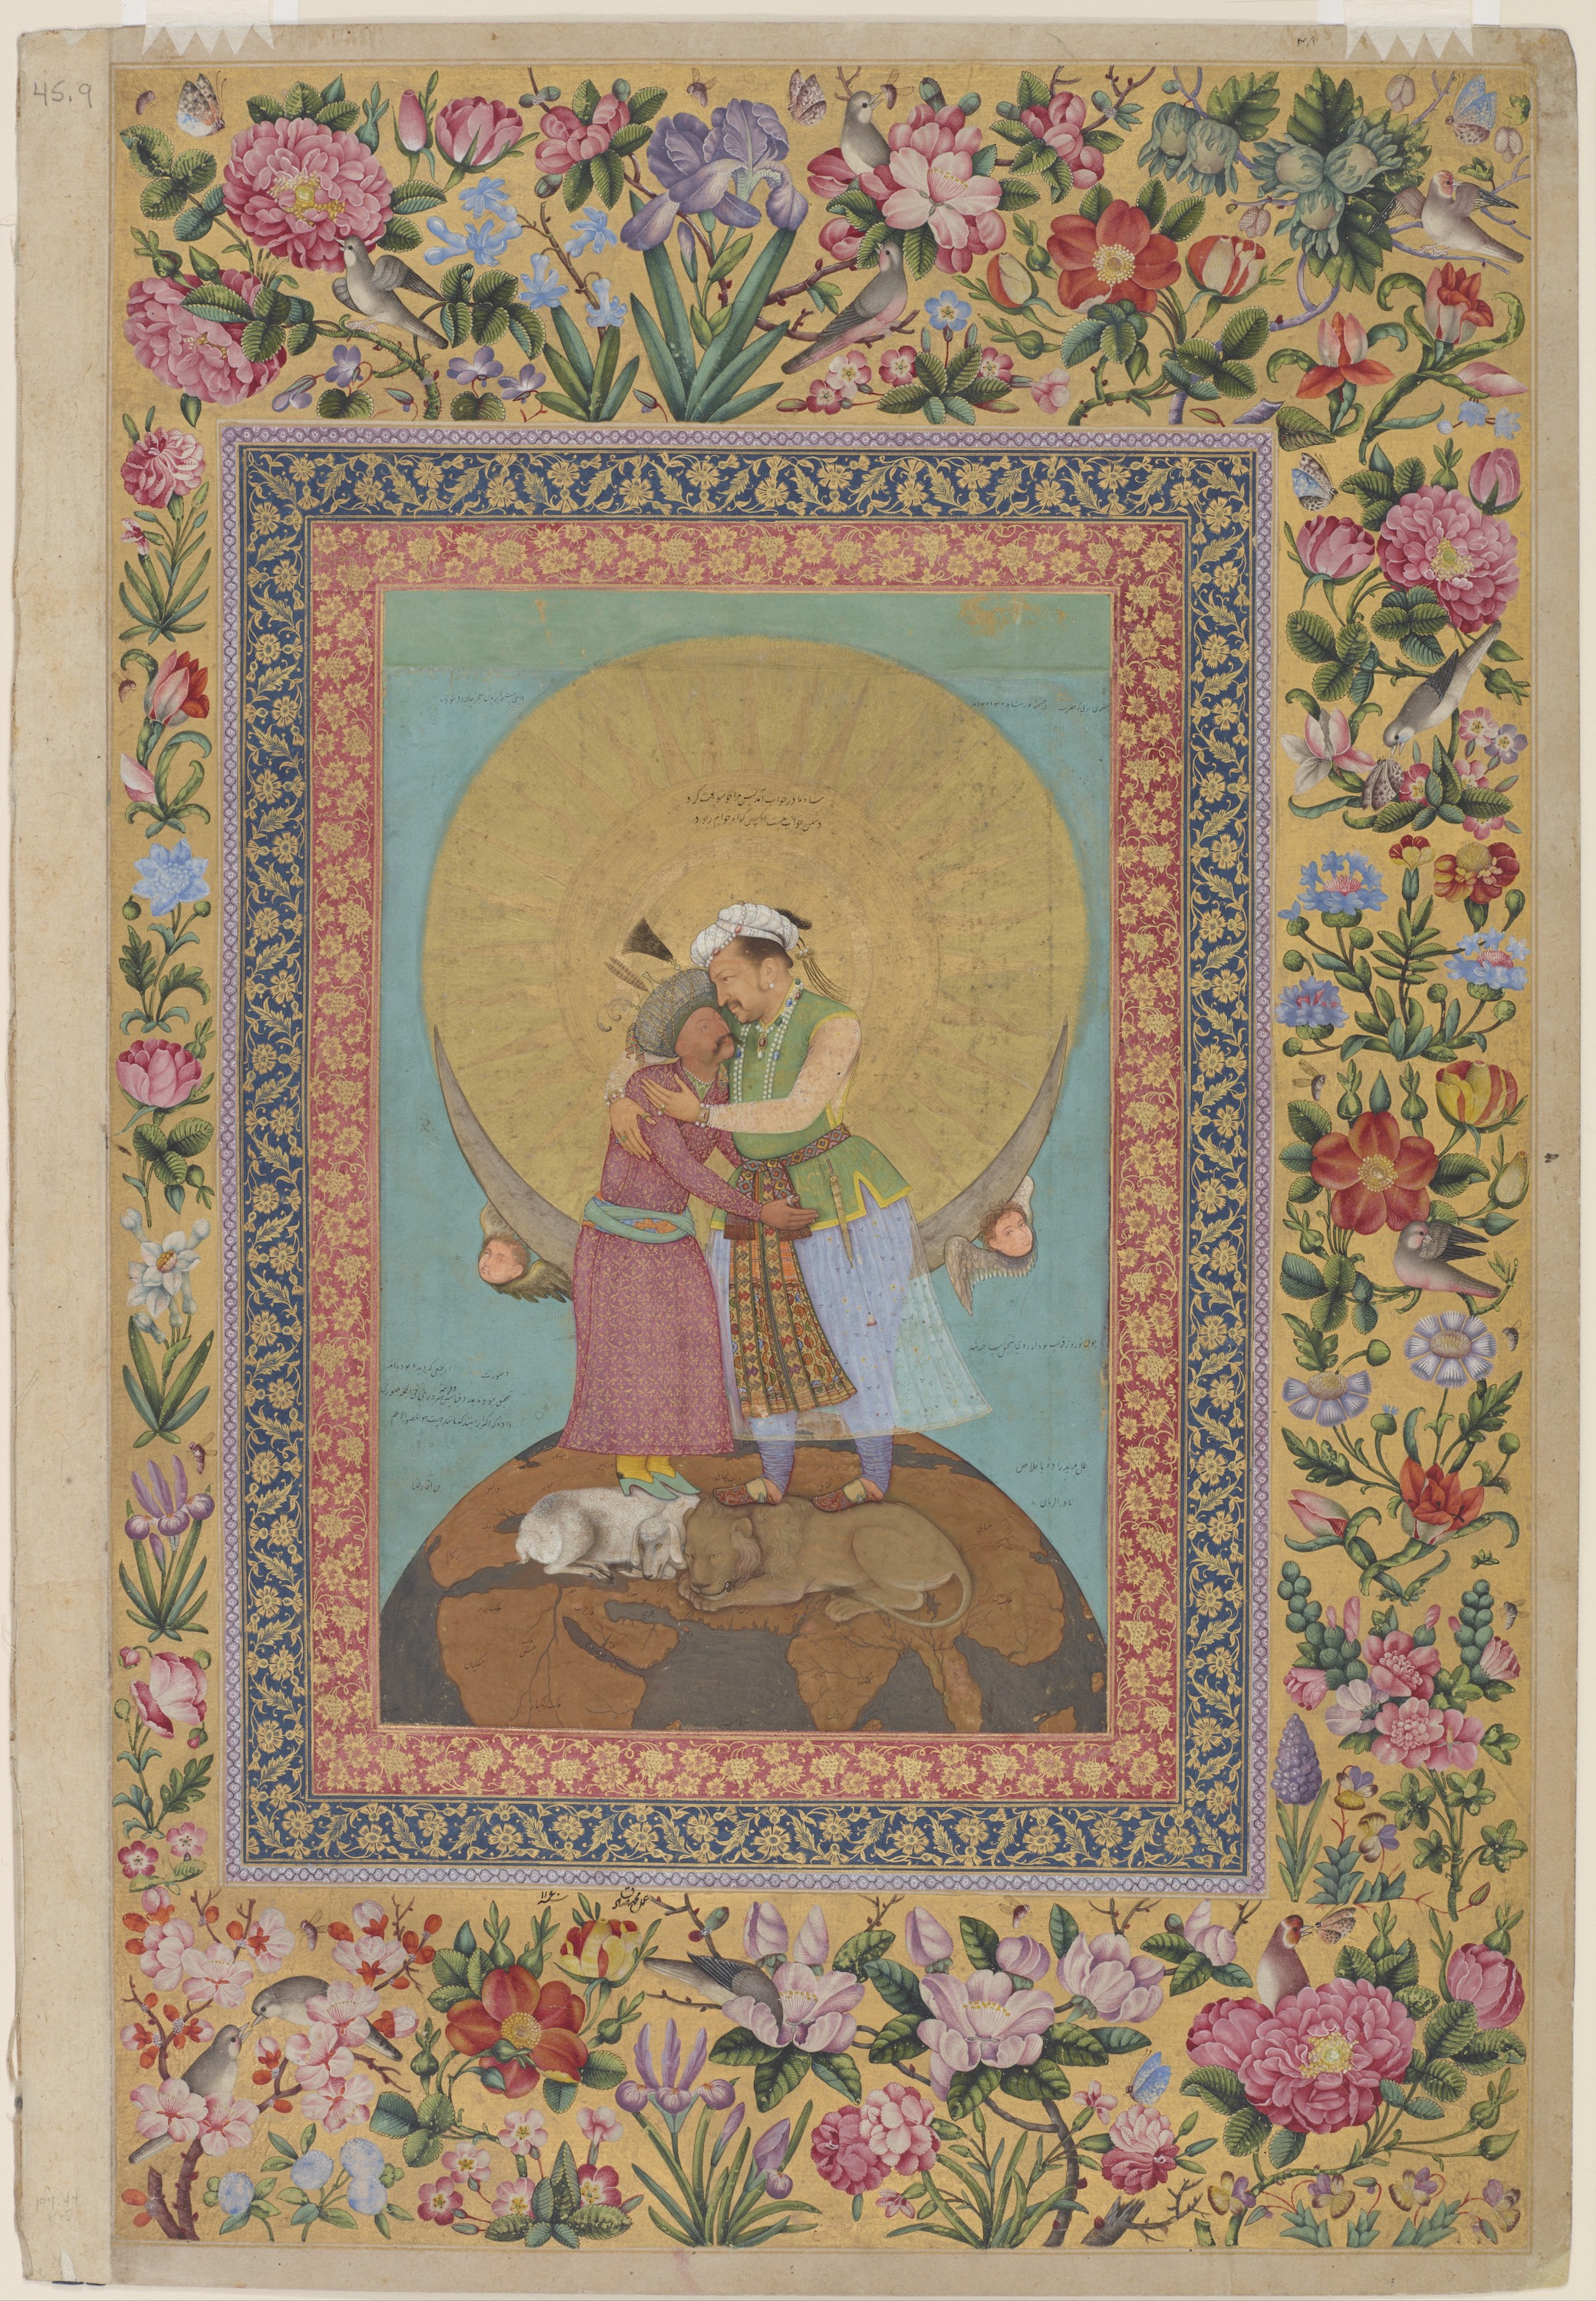 Аллегоричне зображення імператора Джахангіра і шаха Аббаса by Abu al-Hasan - ca. 1618; margins 1747–48 - 9 3/8 x 6 1/16 in 